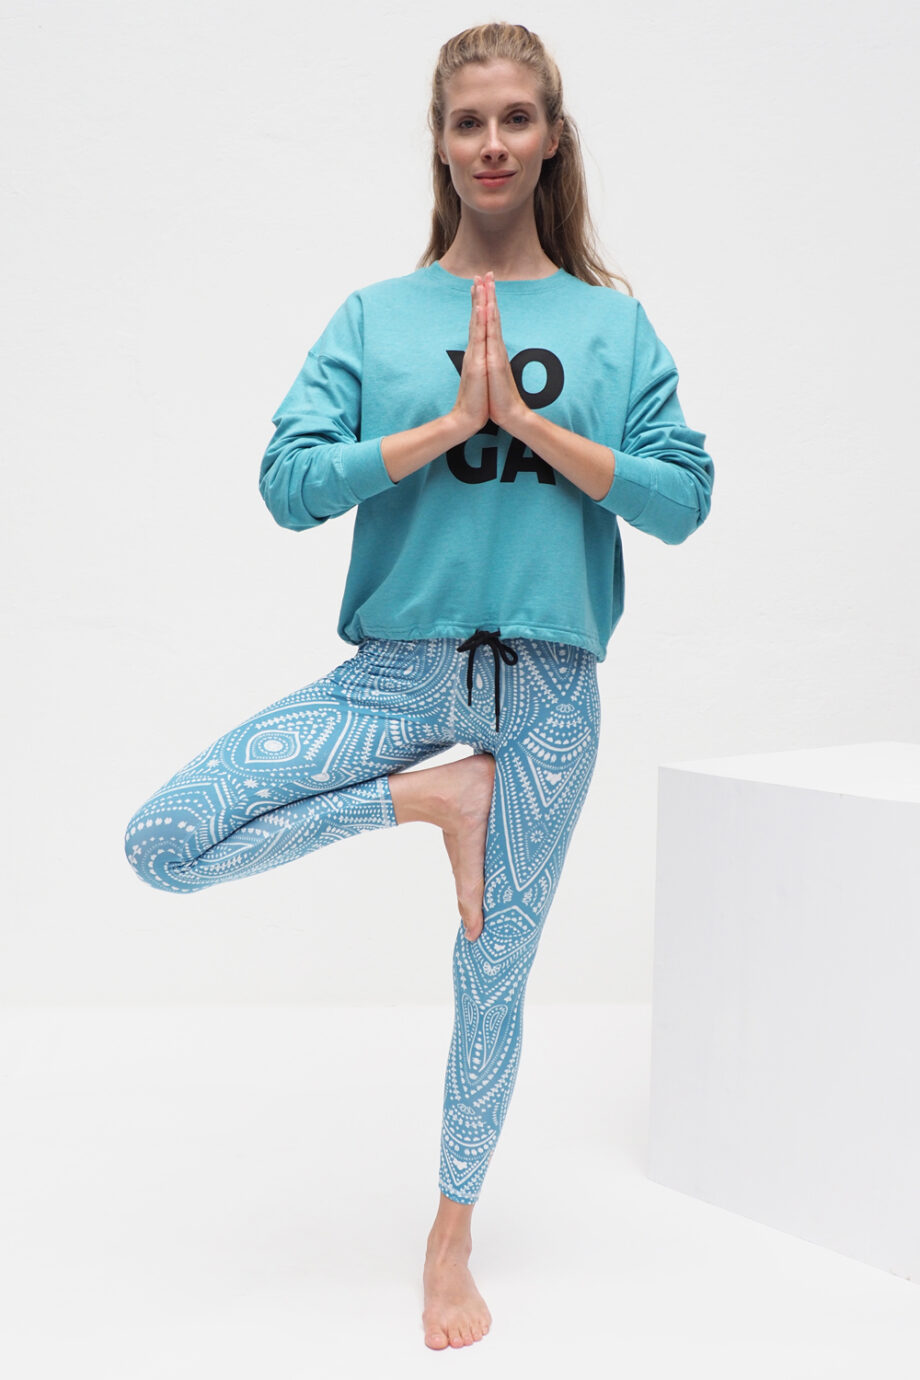 Ganga Leggings mandalay turquoise_Kismet Yogastyle